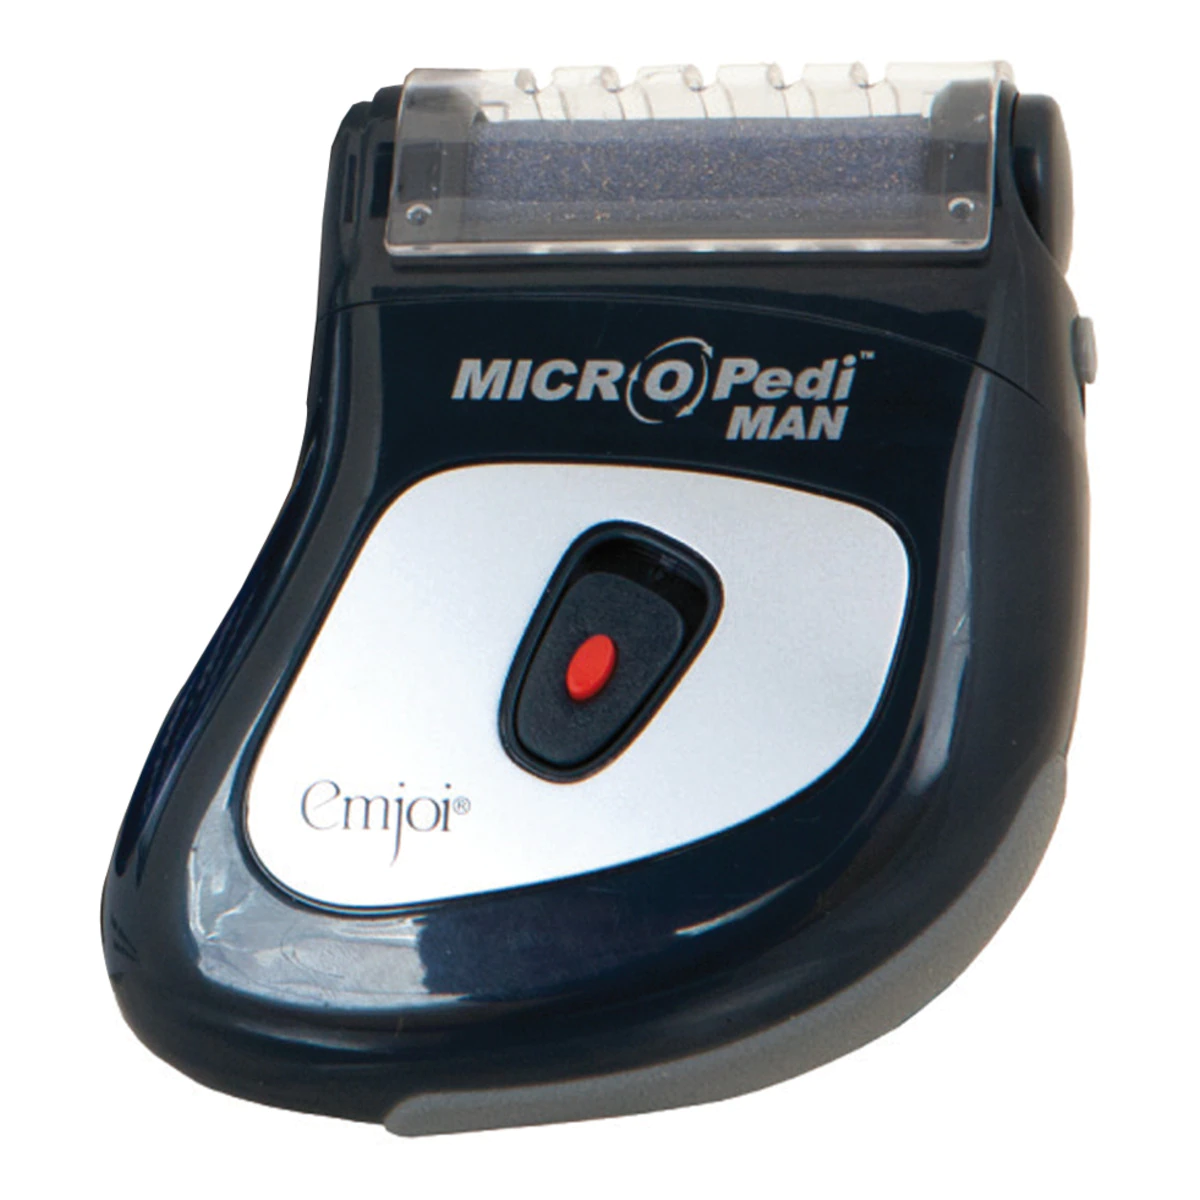 Aparato de pedicura MICRO Pedi Man MPM con rodillo micro-mineral